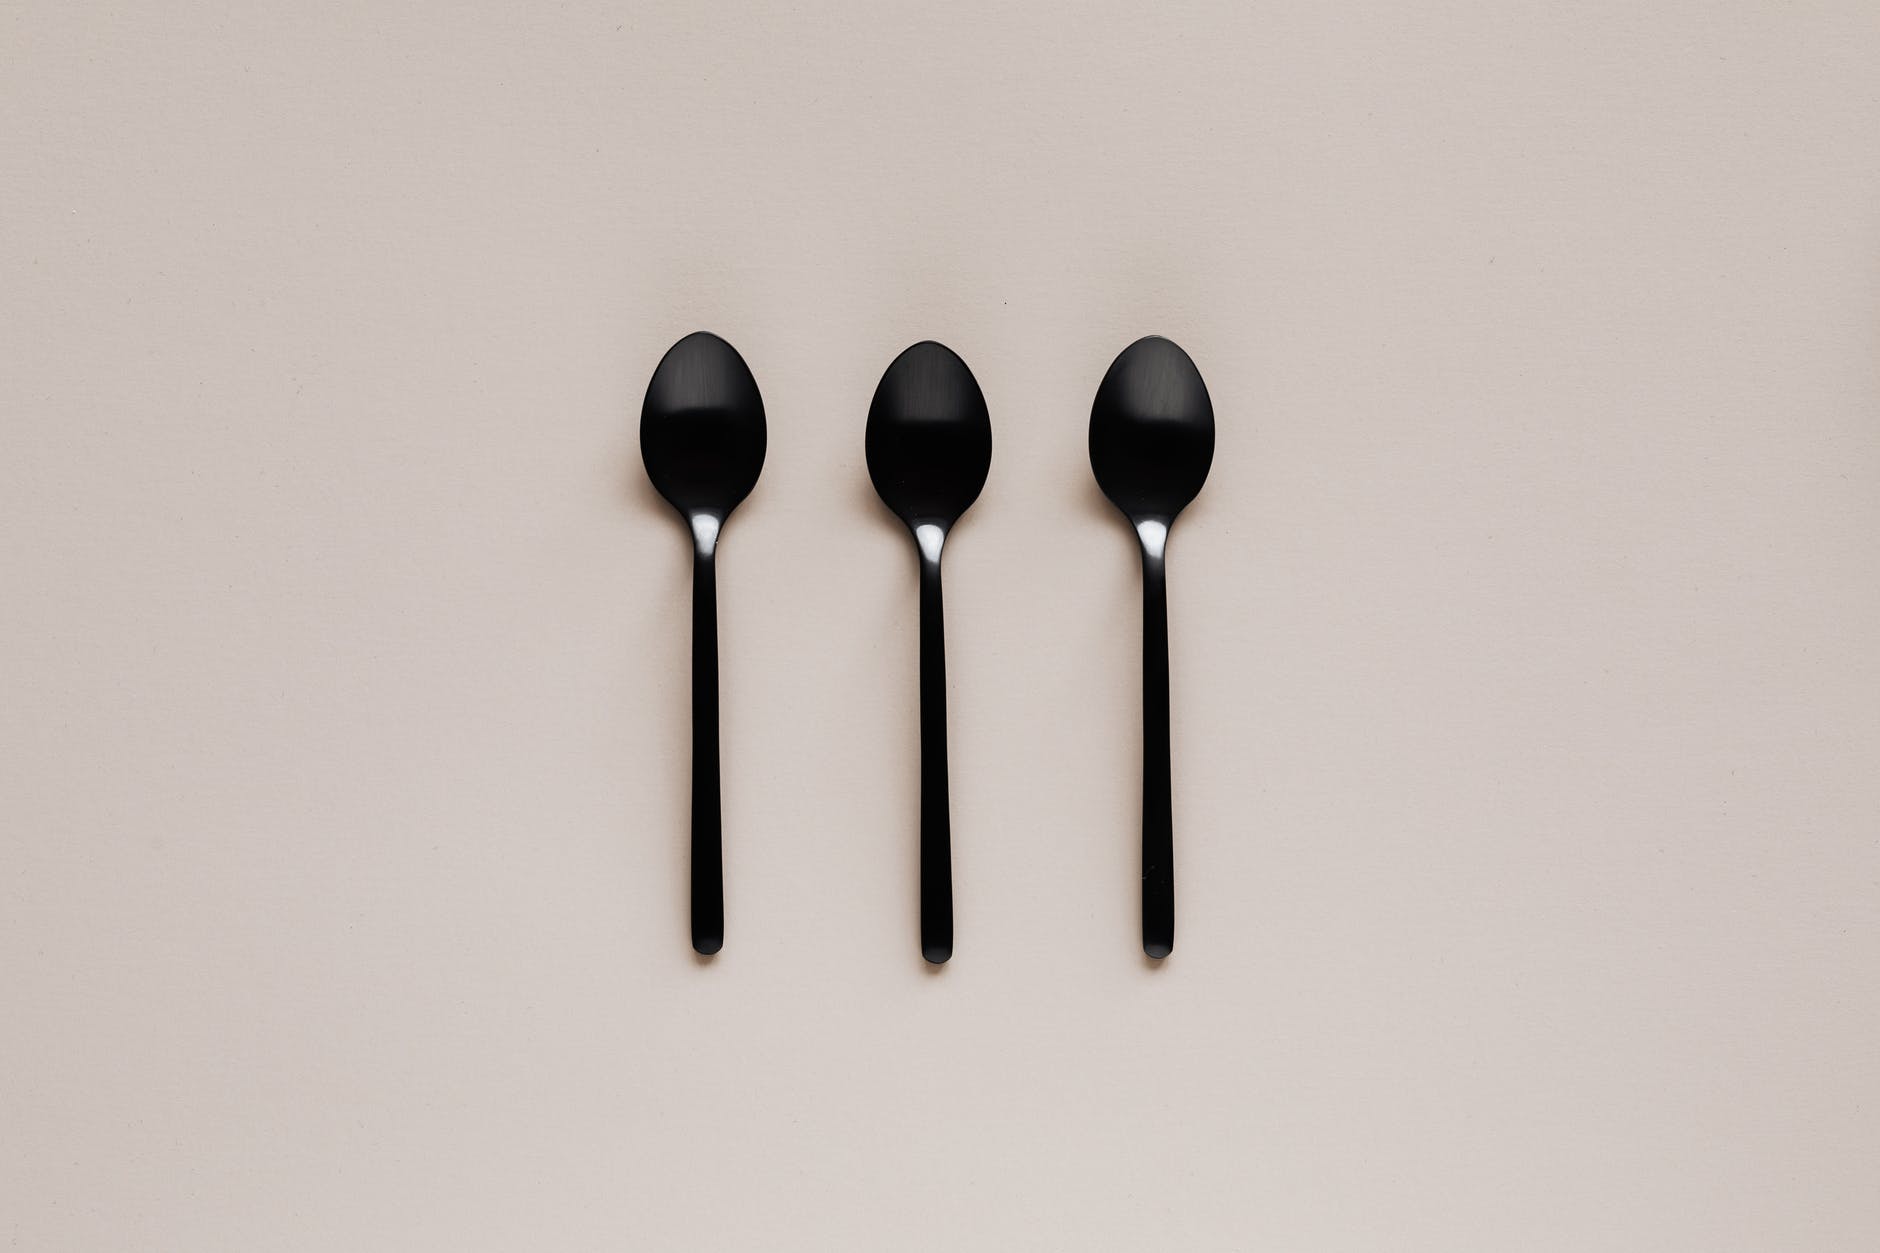 set of black teaspoons on beige surface